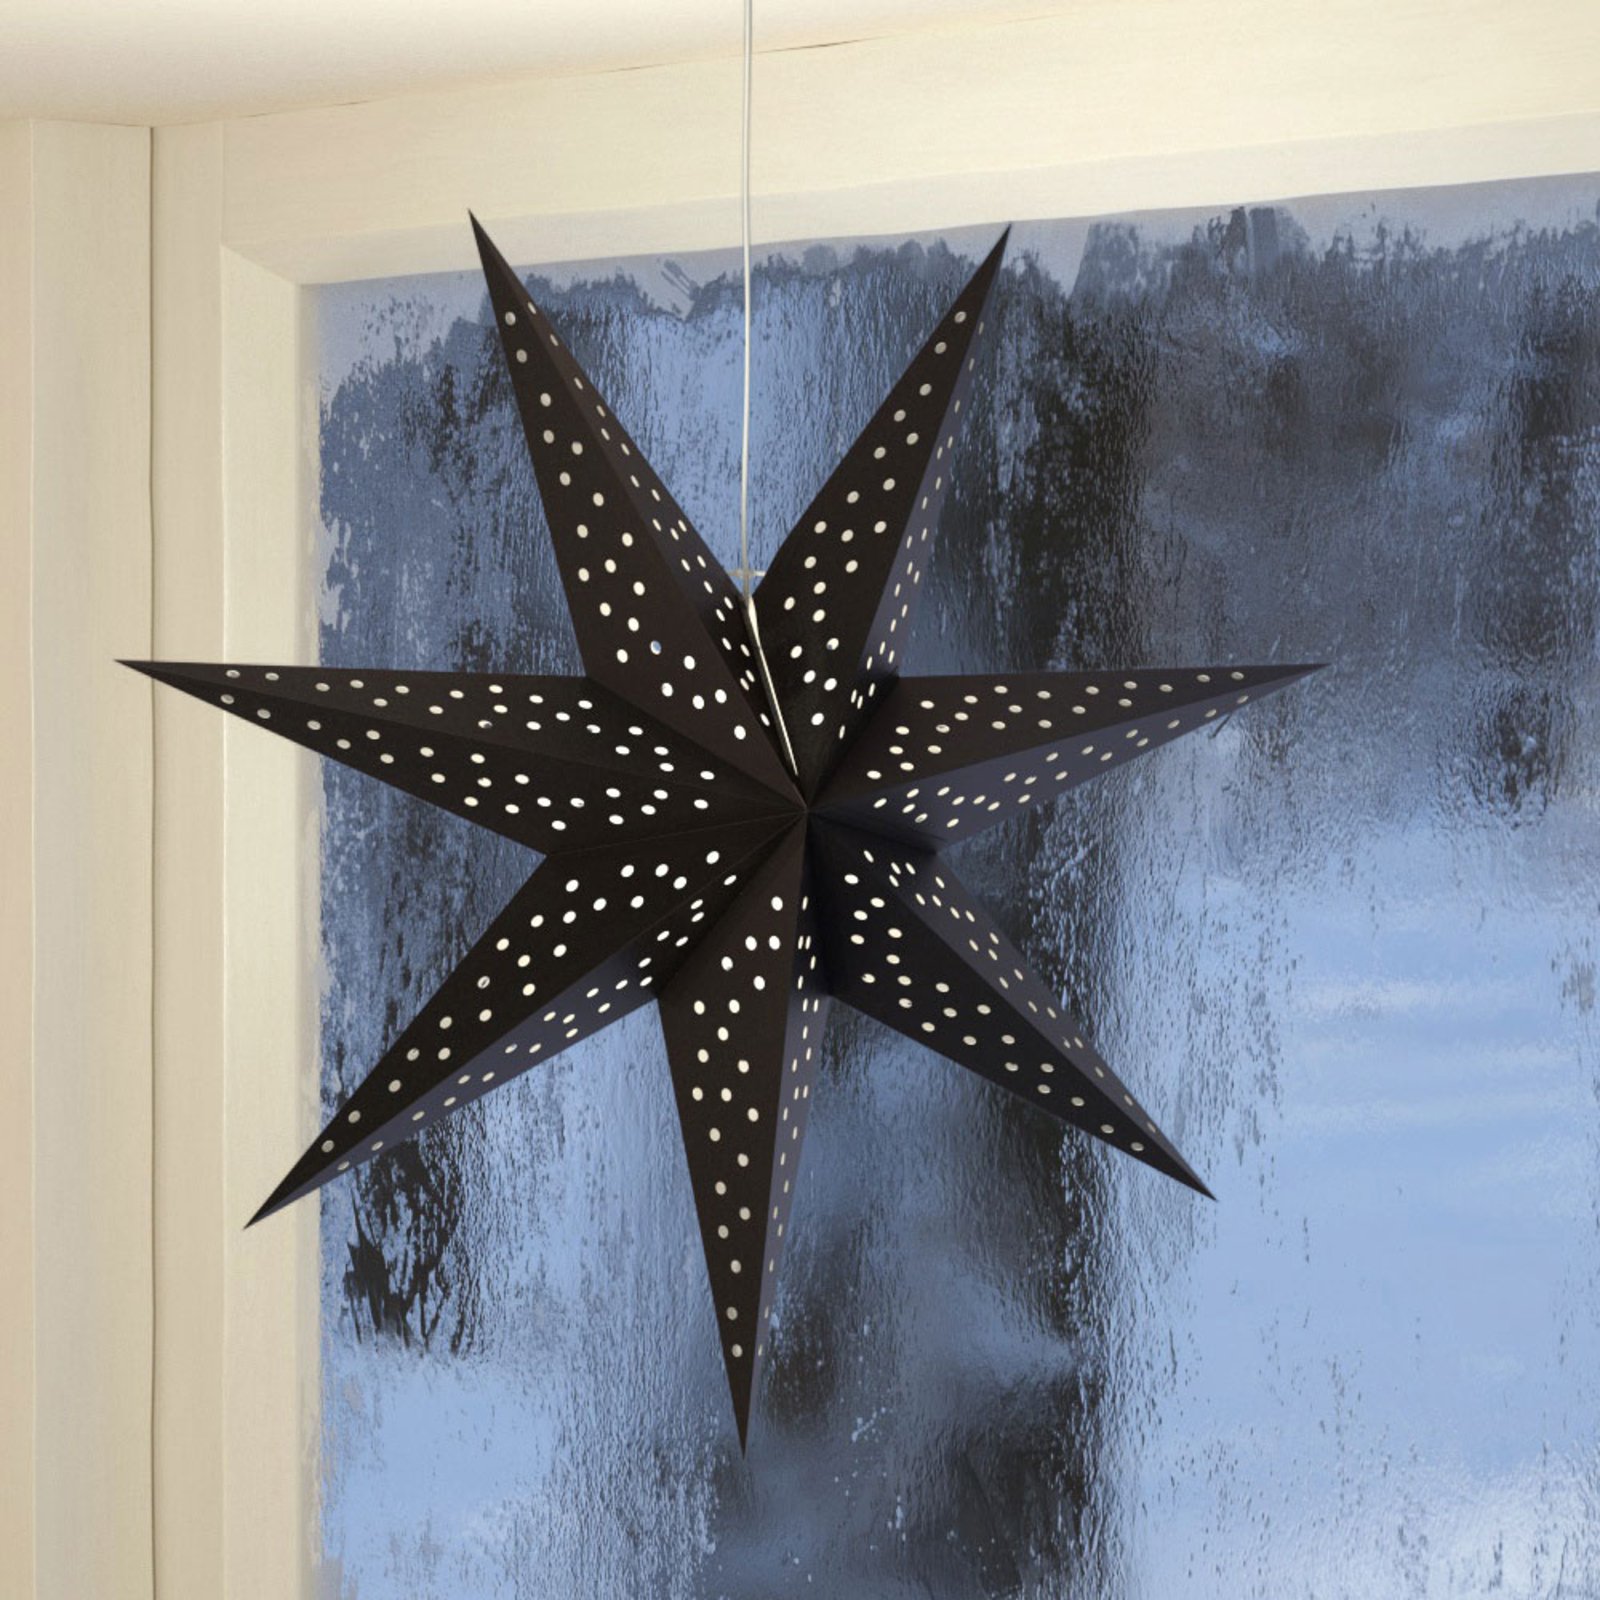 Zvezdica Clara za obešanje, žameten videz Ø 75 cm, črna